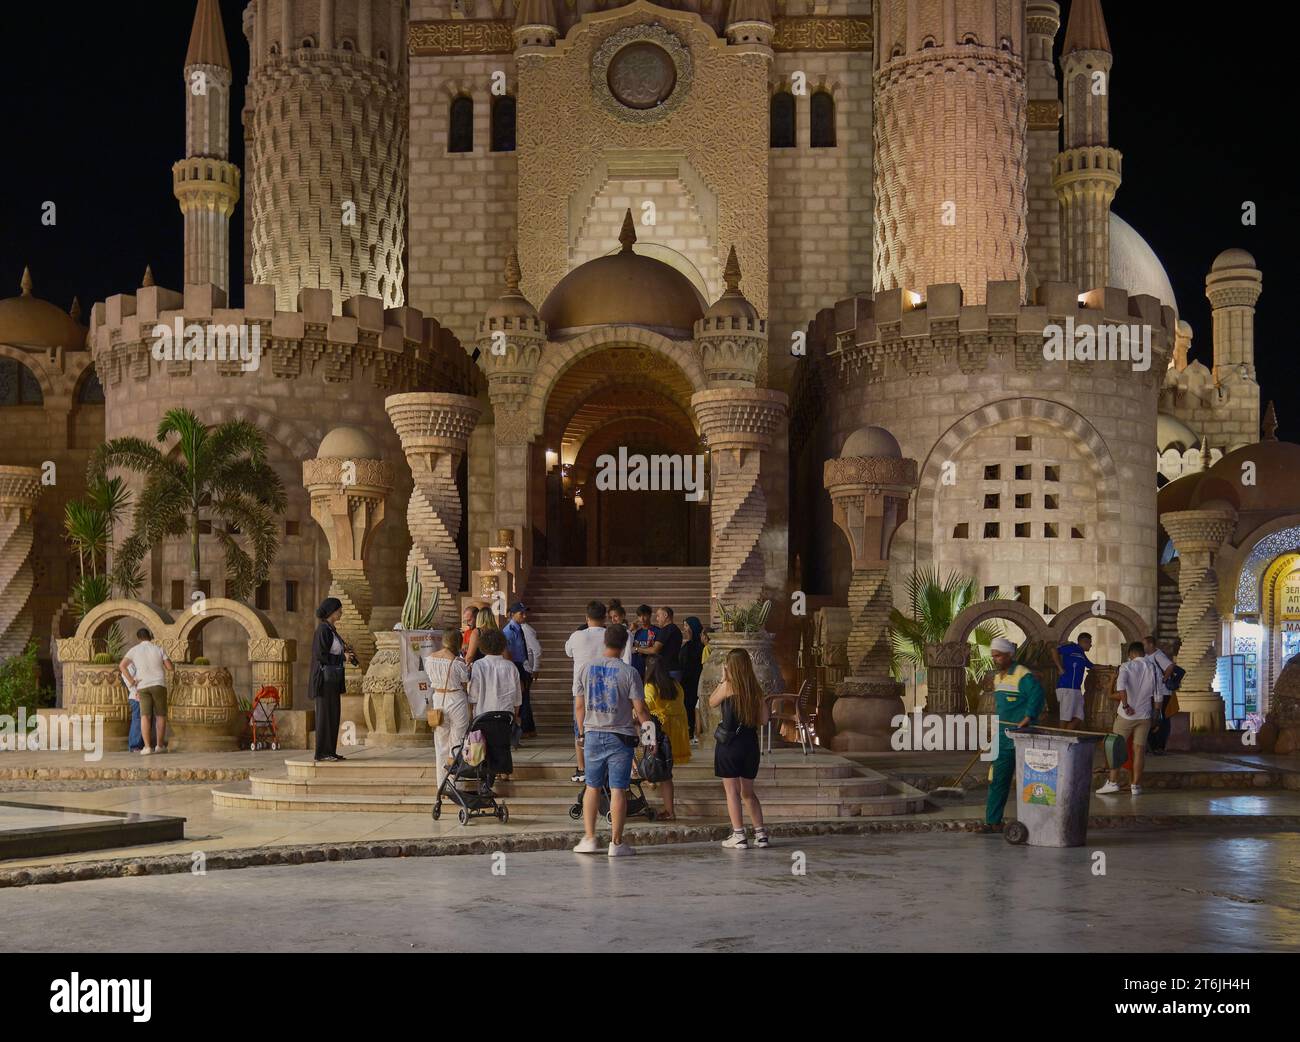 La mosquée Al Sahaba à Sharm El Sheikh, en Égypte, fusionne des éléments de style fatimide, mamelouk et ottoman dans son architecture et son design intérieur. Vue nocturne Banque D'Images